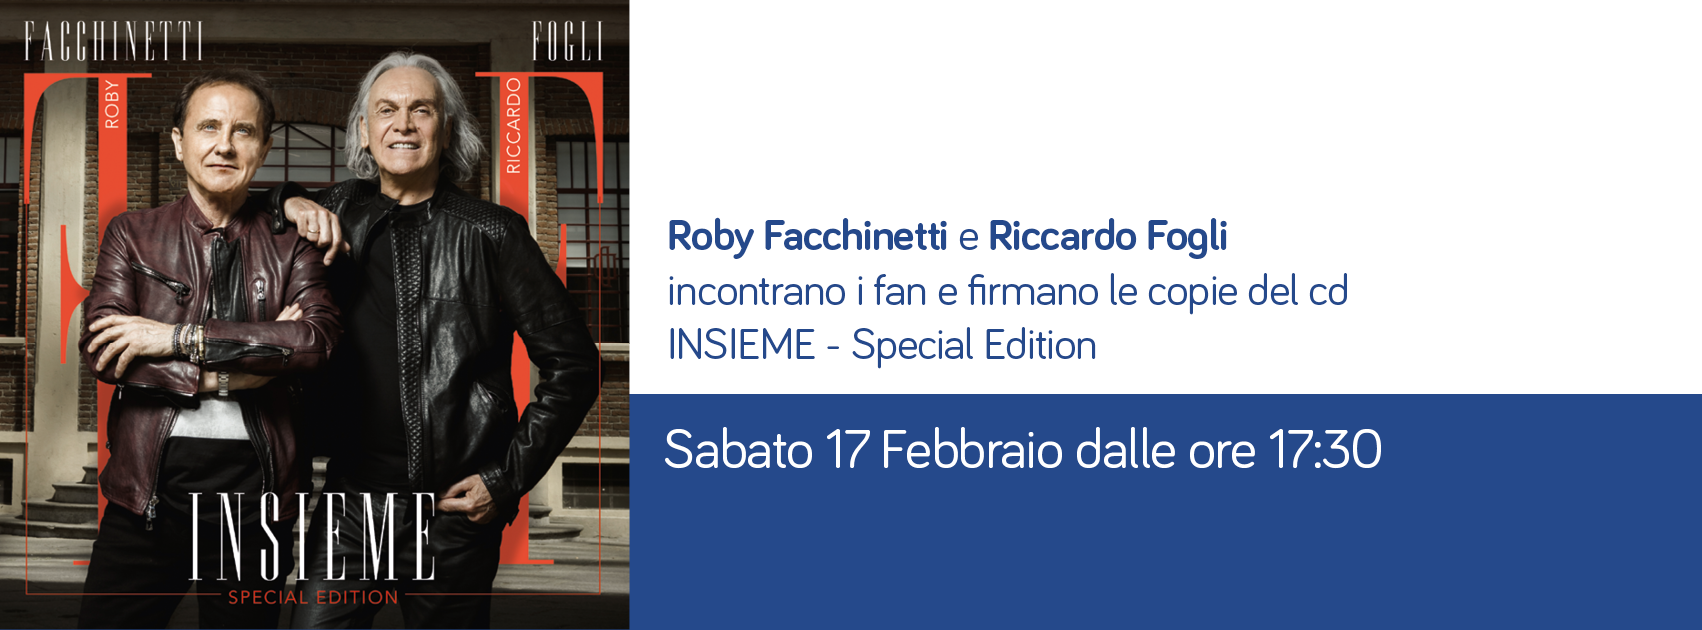 Al momento stai visualizzando Roby Facchinetti e Riccardo Fogli incontrano i fan